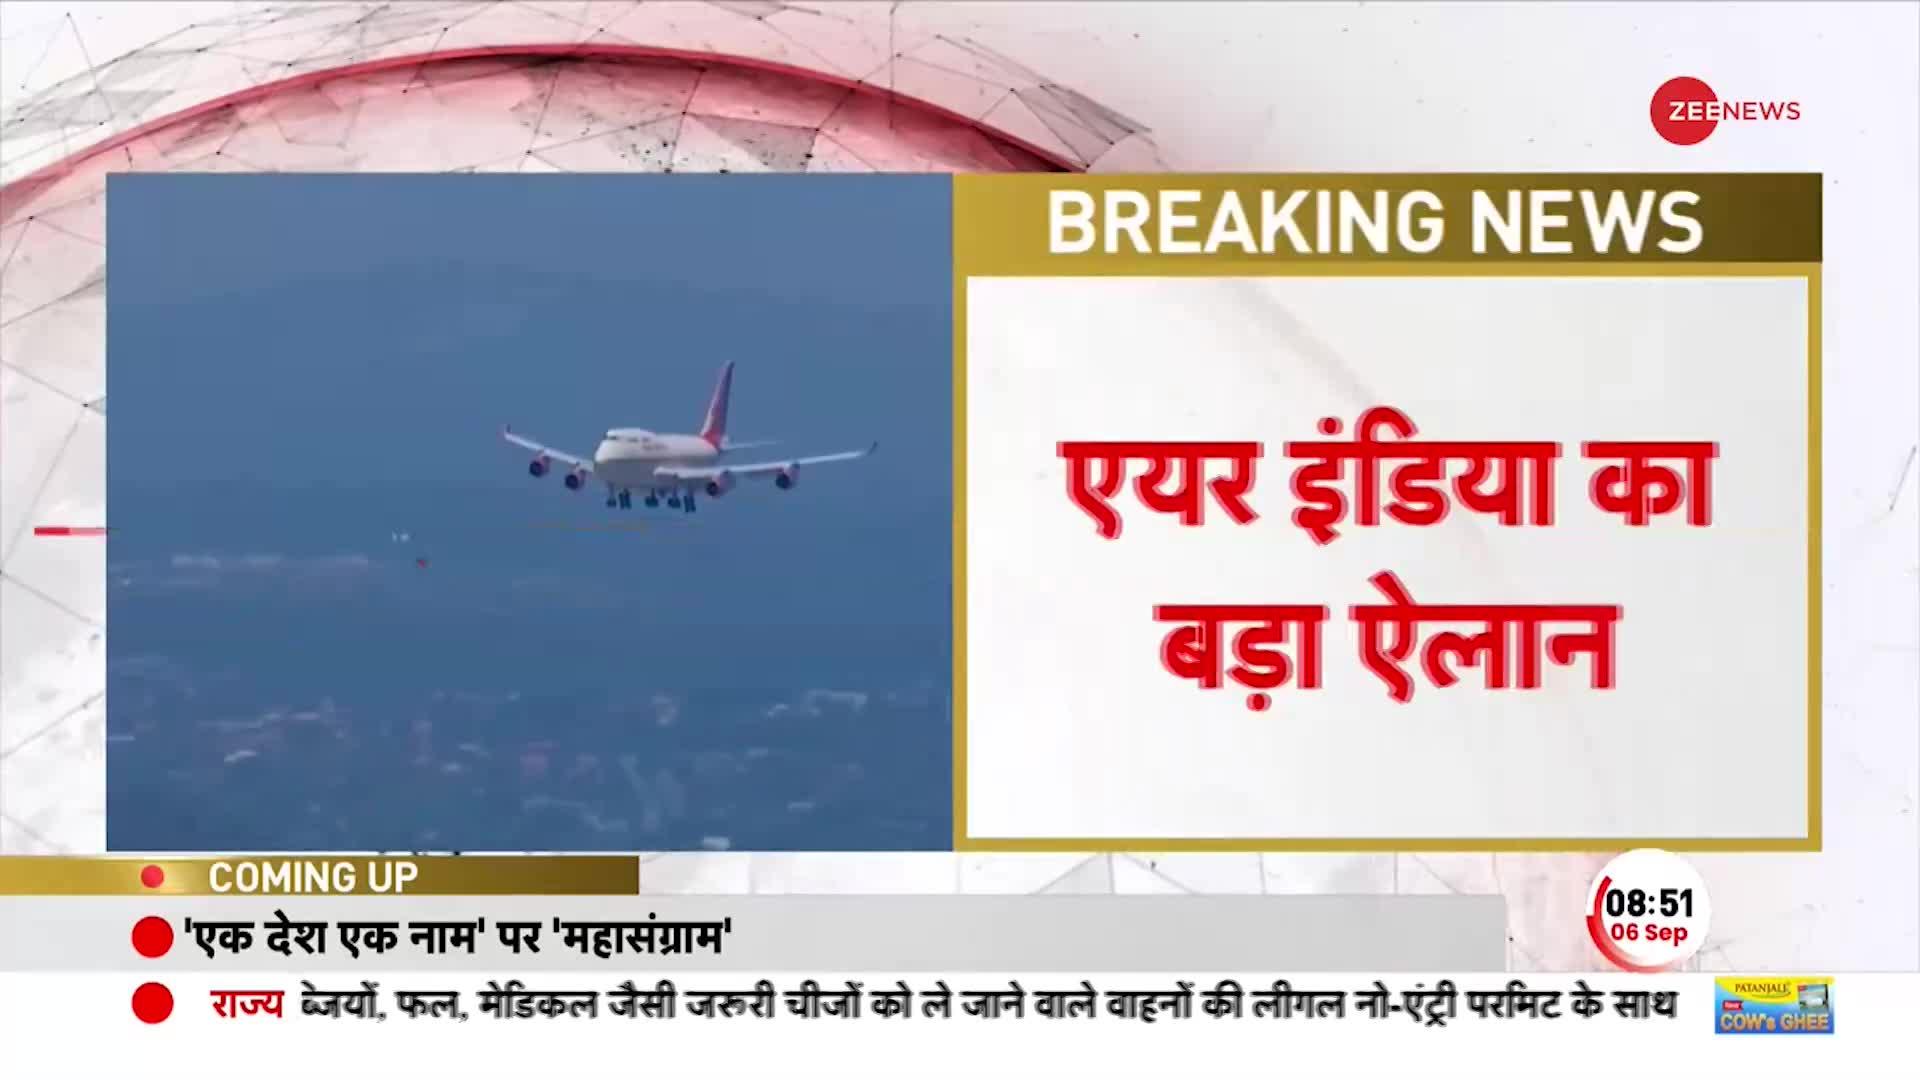 Breaking News: Air India का बड़ा ऐलान, 7 से 11 सितंबर तक सभी उड़ानों पर लगी रोक